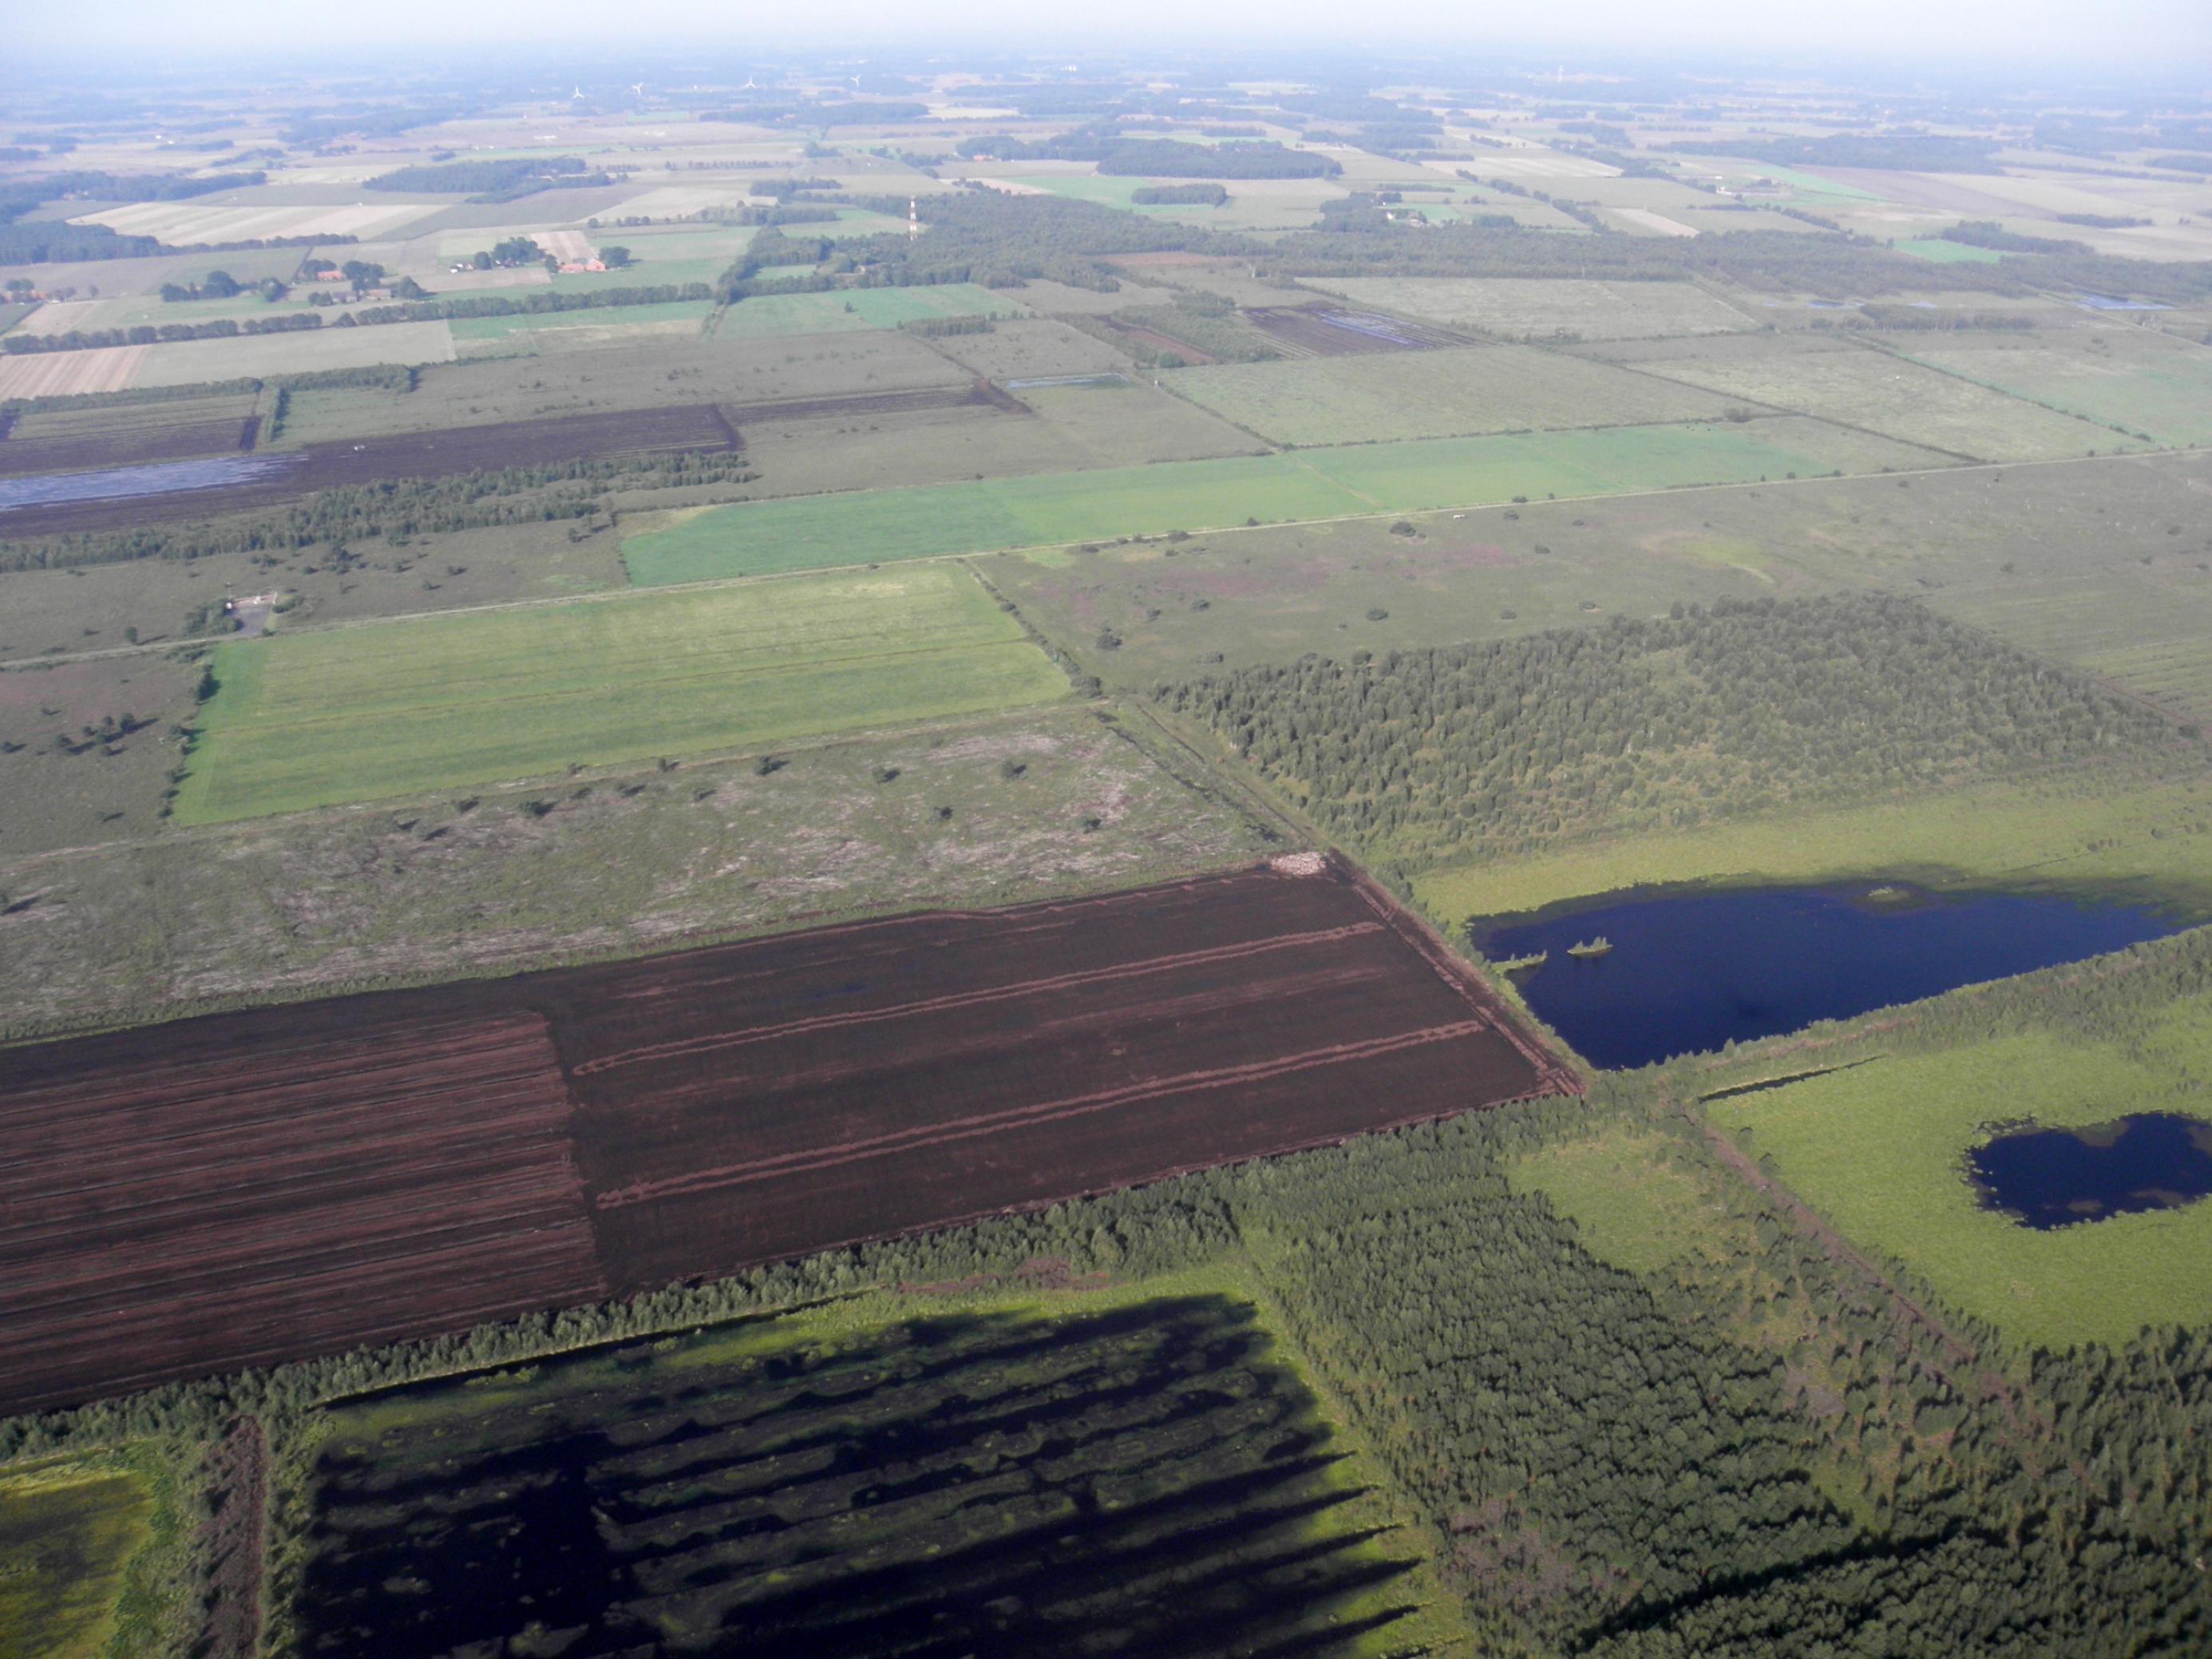 Luftbild einer flachen Landschaft mit Torfstichen und aufgelassenen Abbauflächen, auf denen sich teilweise Flachwasser staut